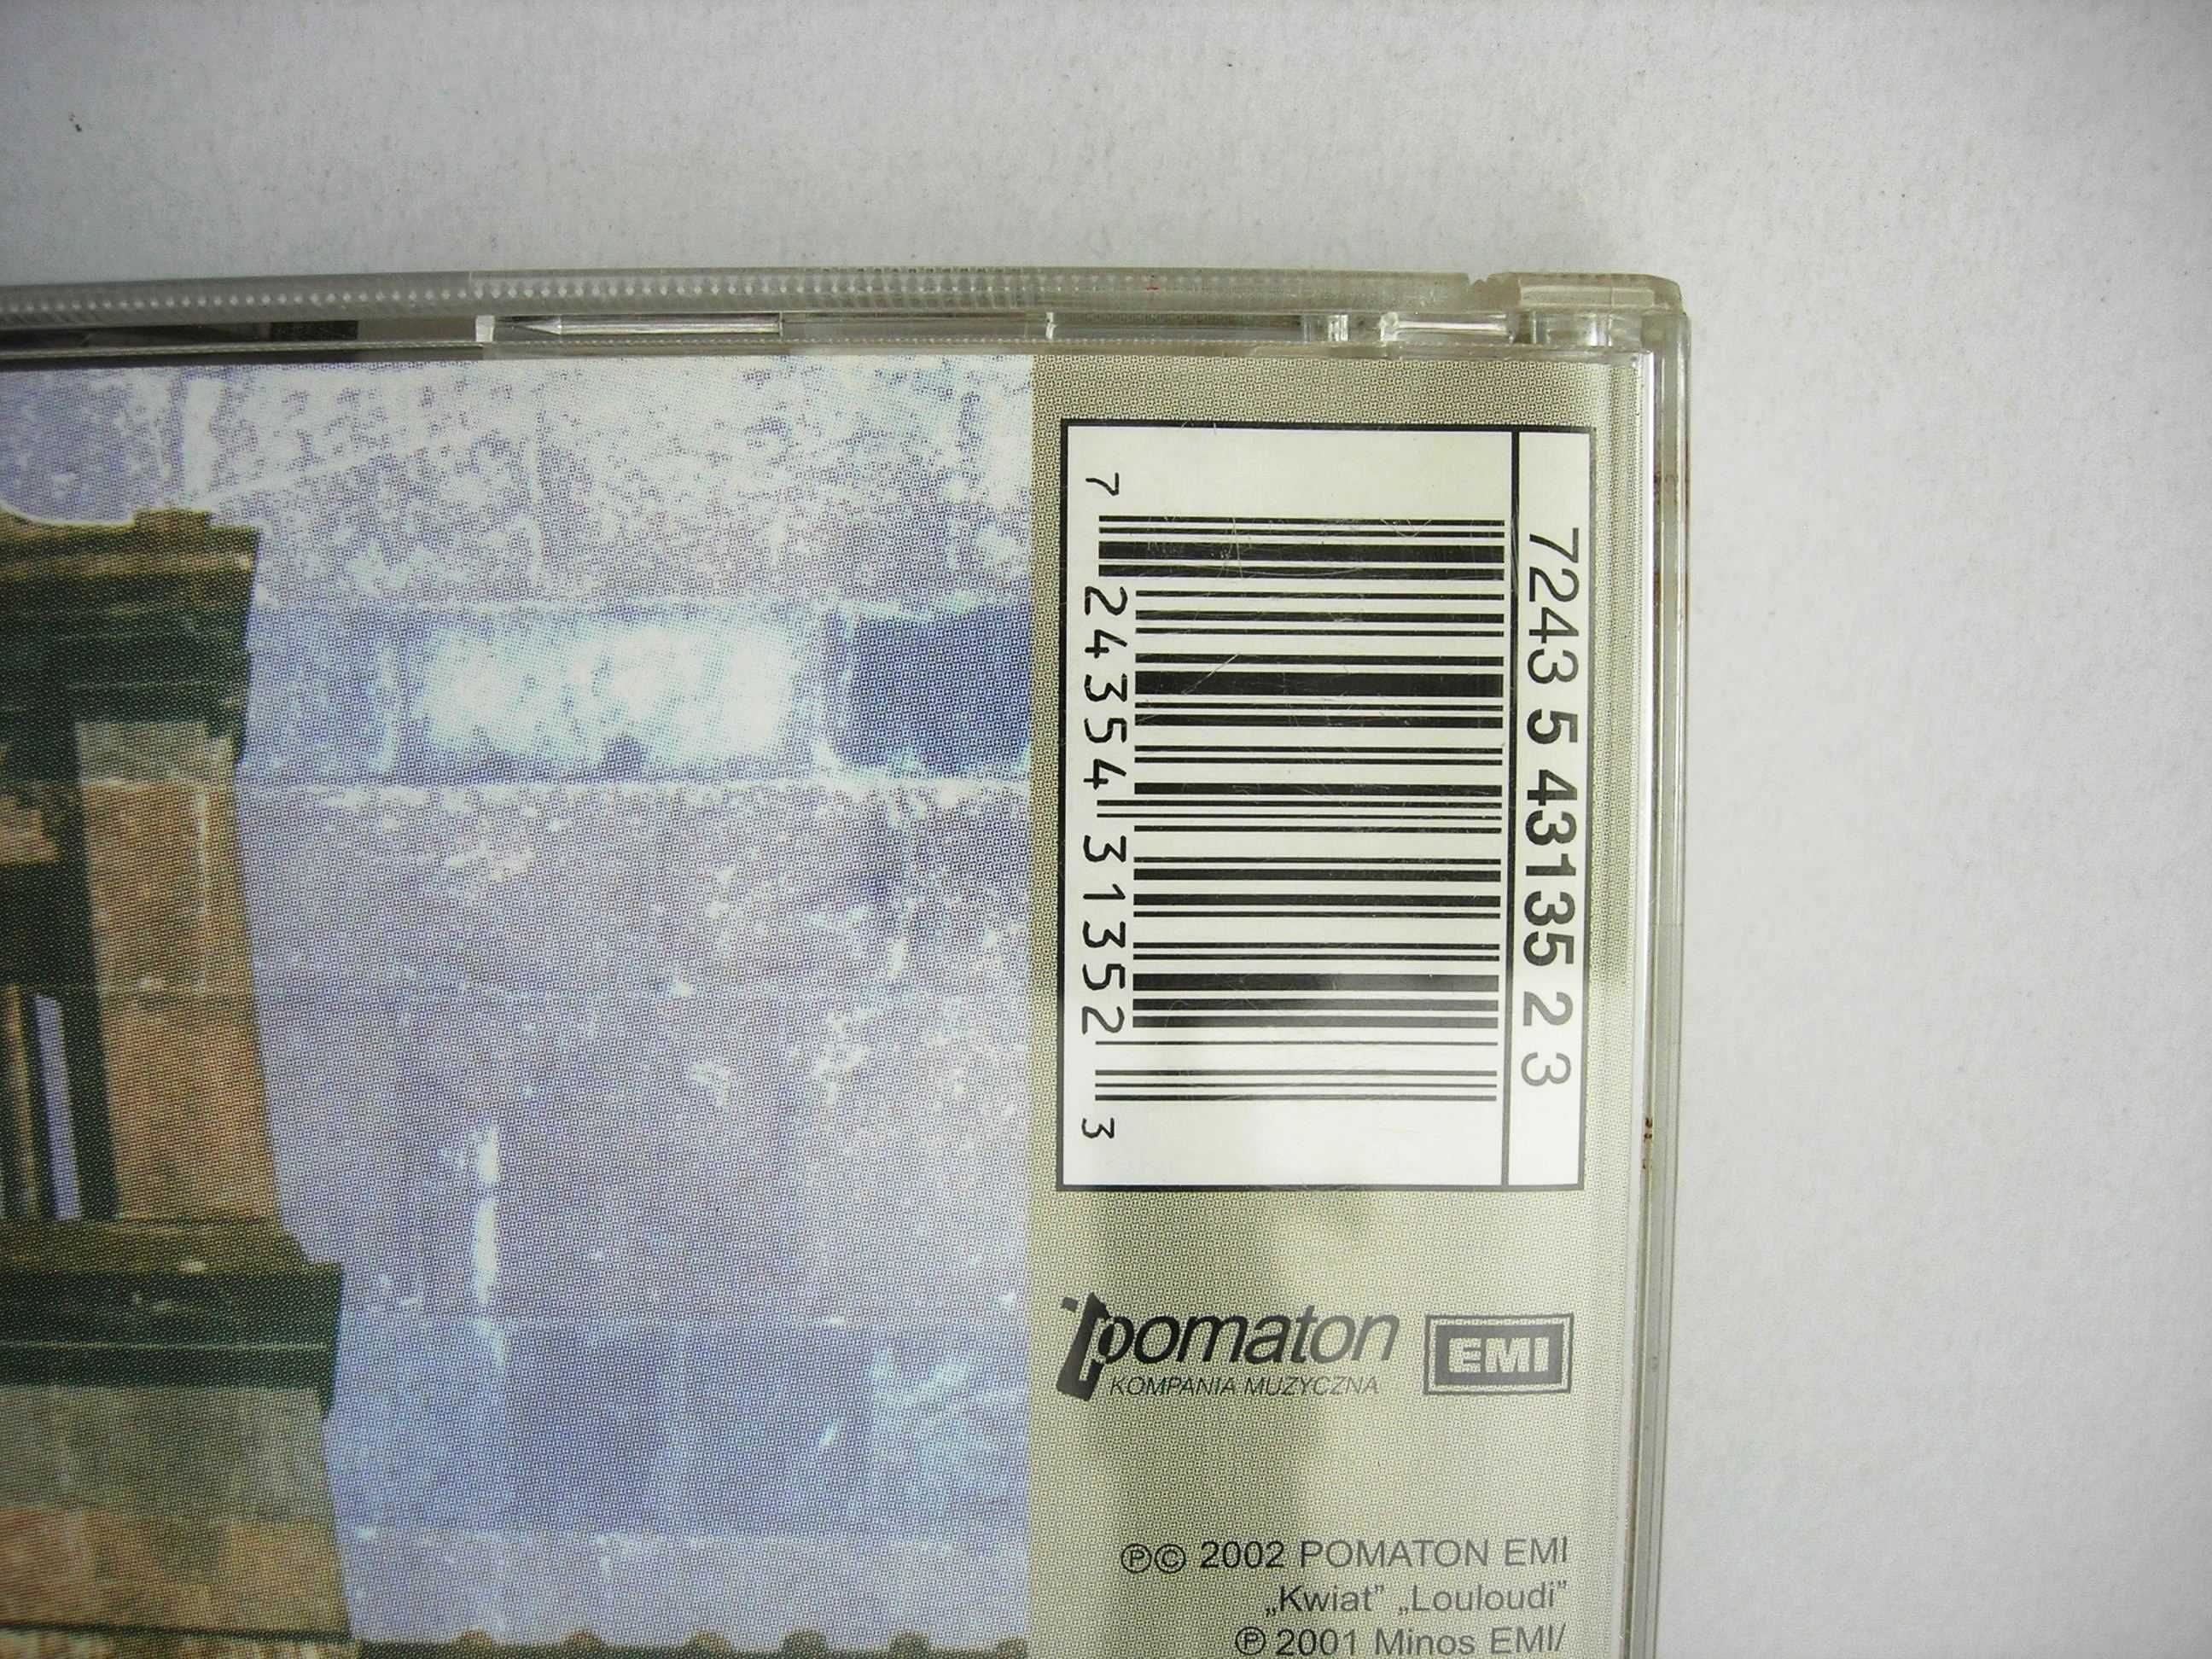 Grzegorz Turnau "Nawet" CD Pomaton EMI 2002